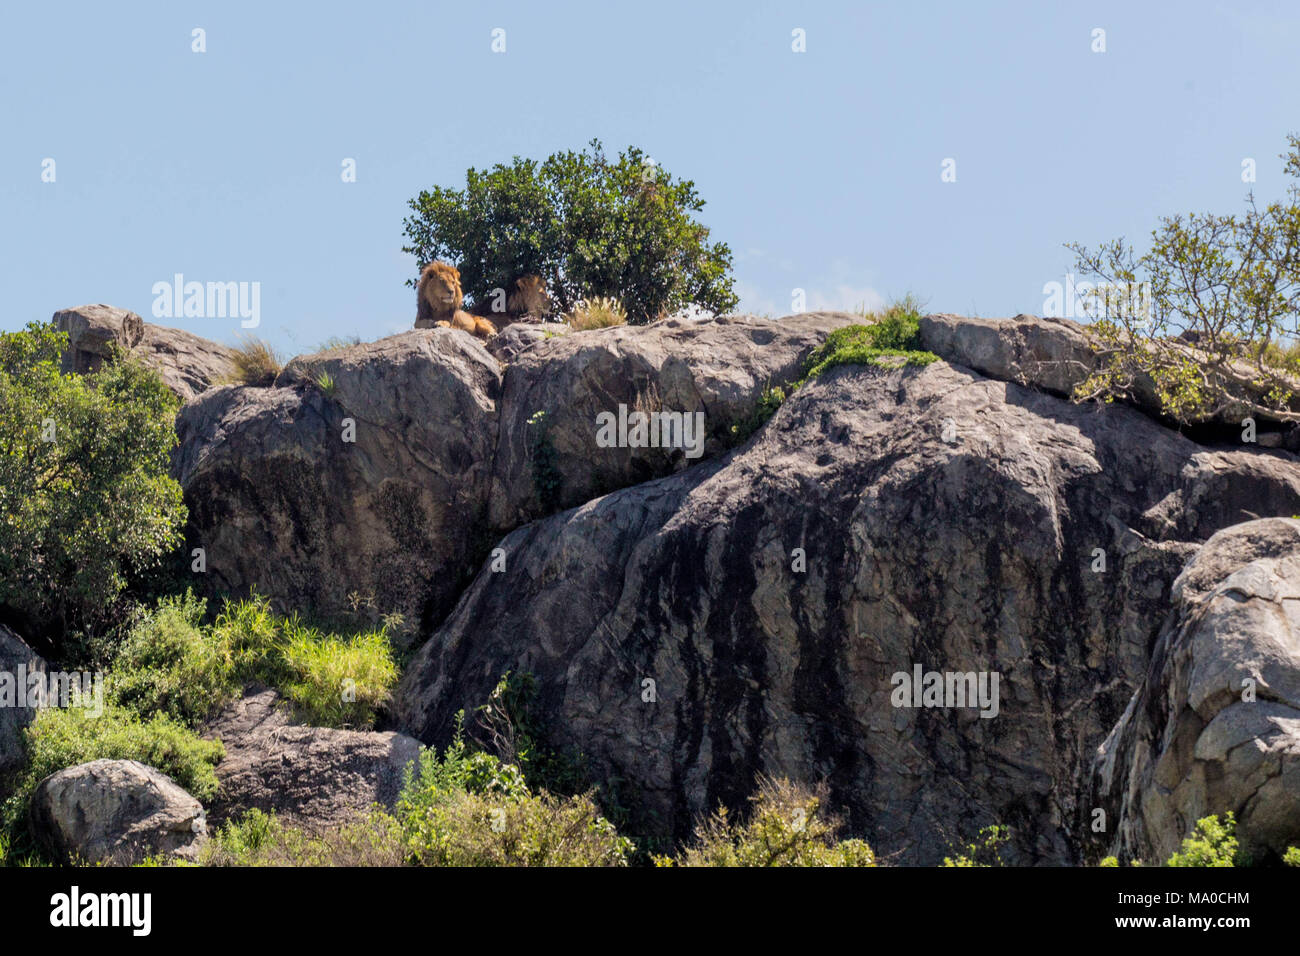 Leoni africani sulle rocce nella parte anteriore del cielo blu a prendere il sole Foto Stock